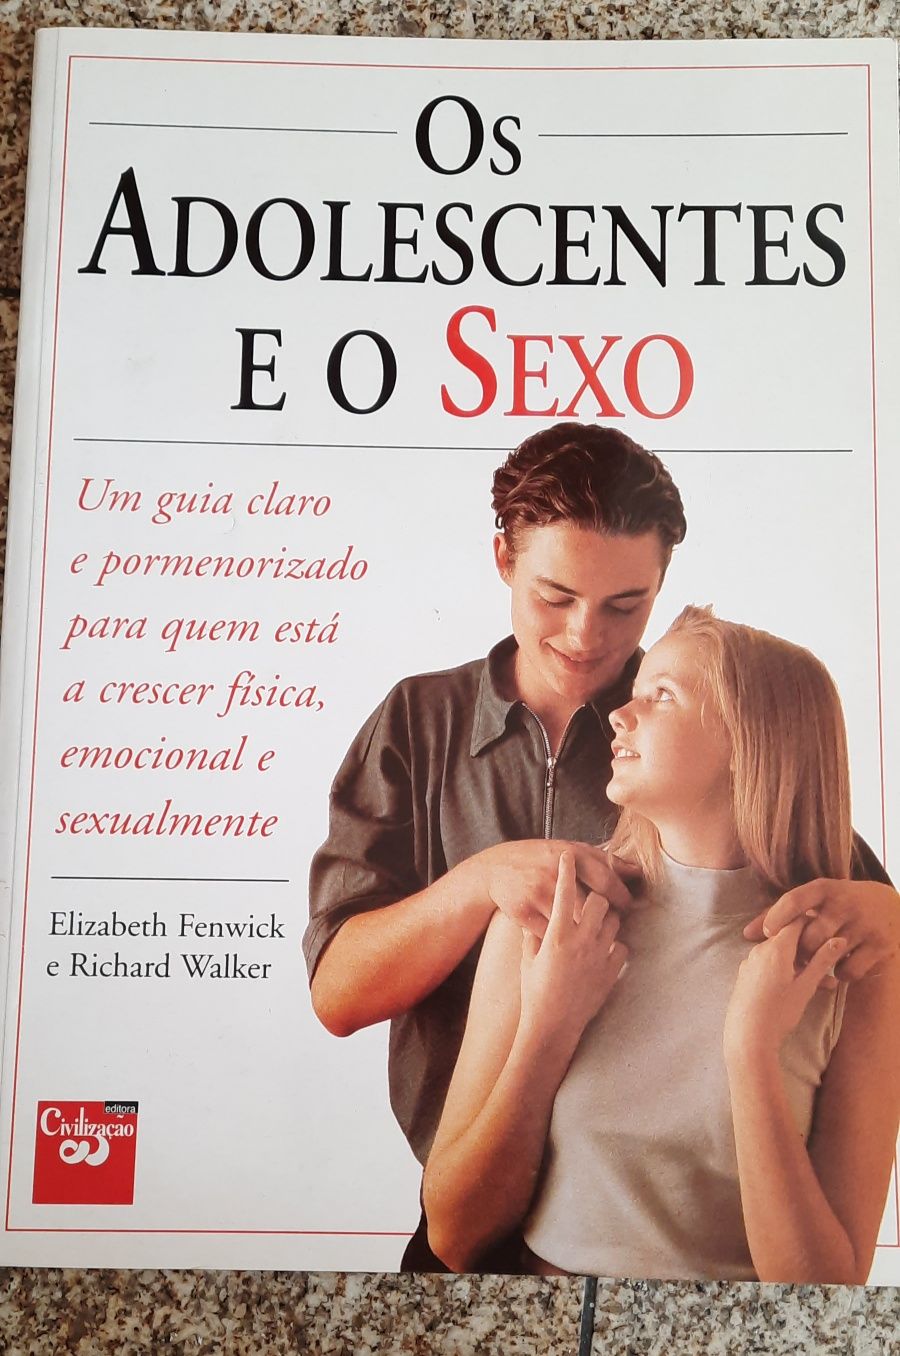 "Os adolescentes e o sexo"